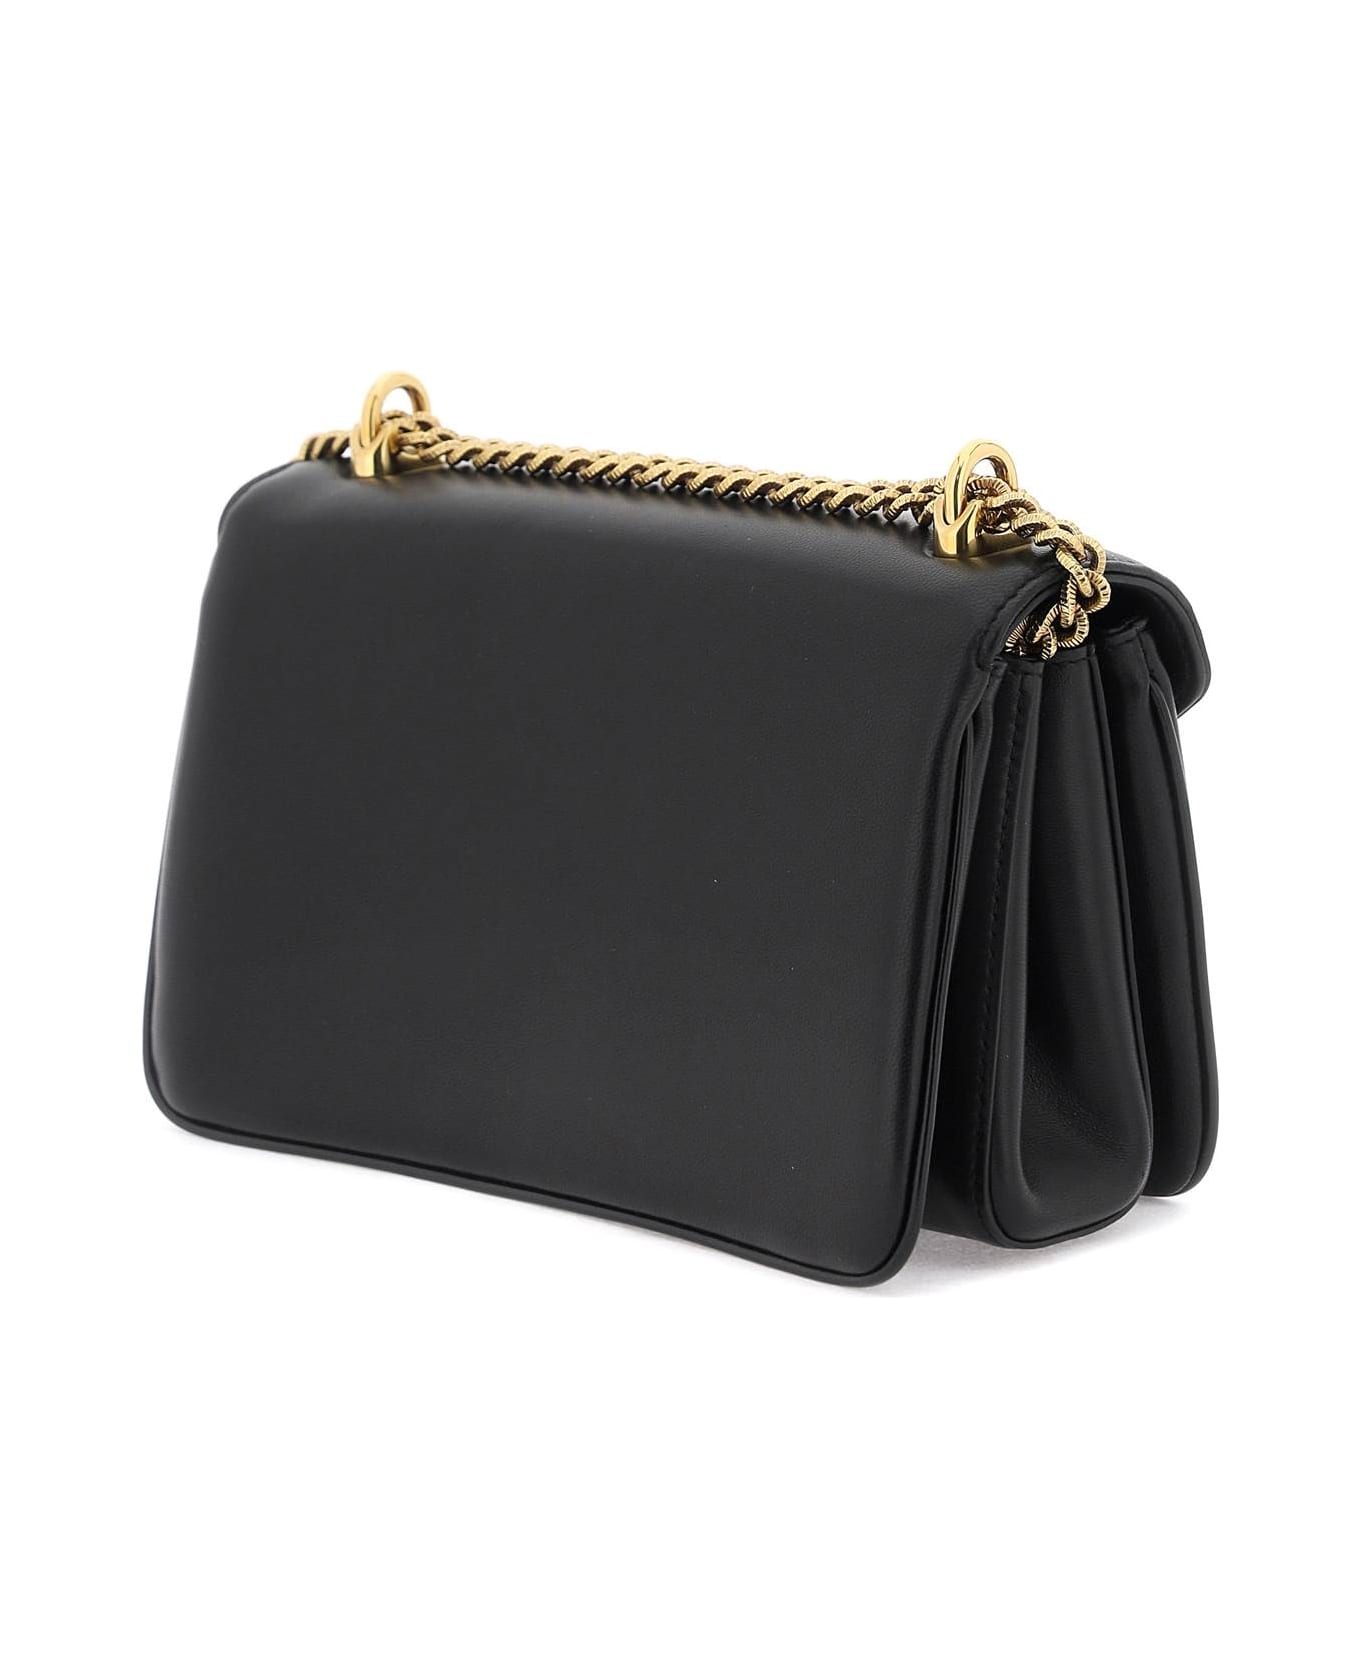 Dolce & Gabbana Black Nappa Leather Devotion Shoulder Bag - Black